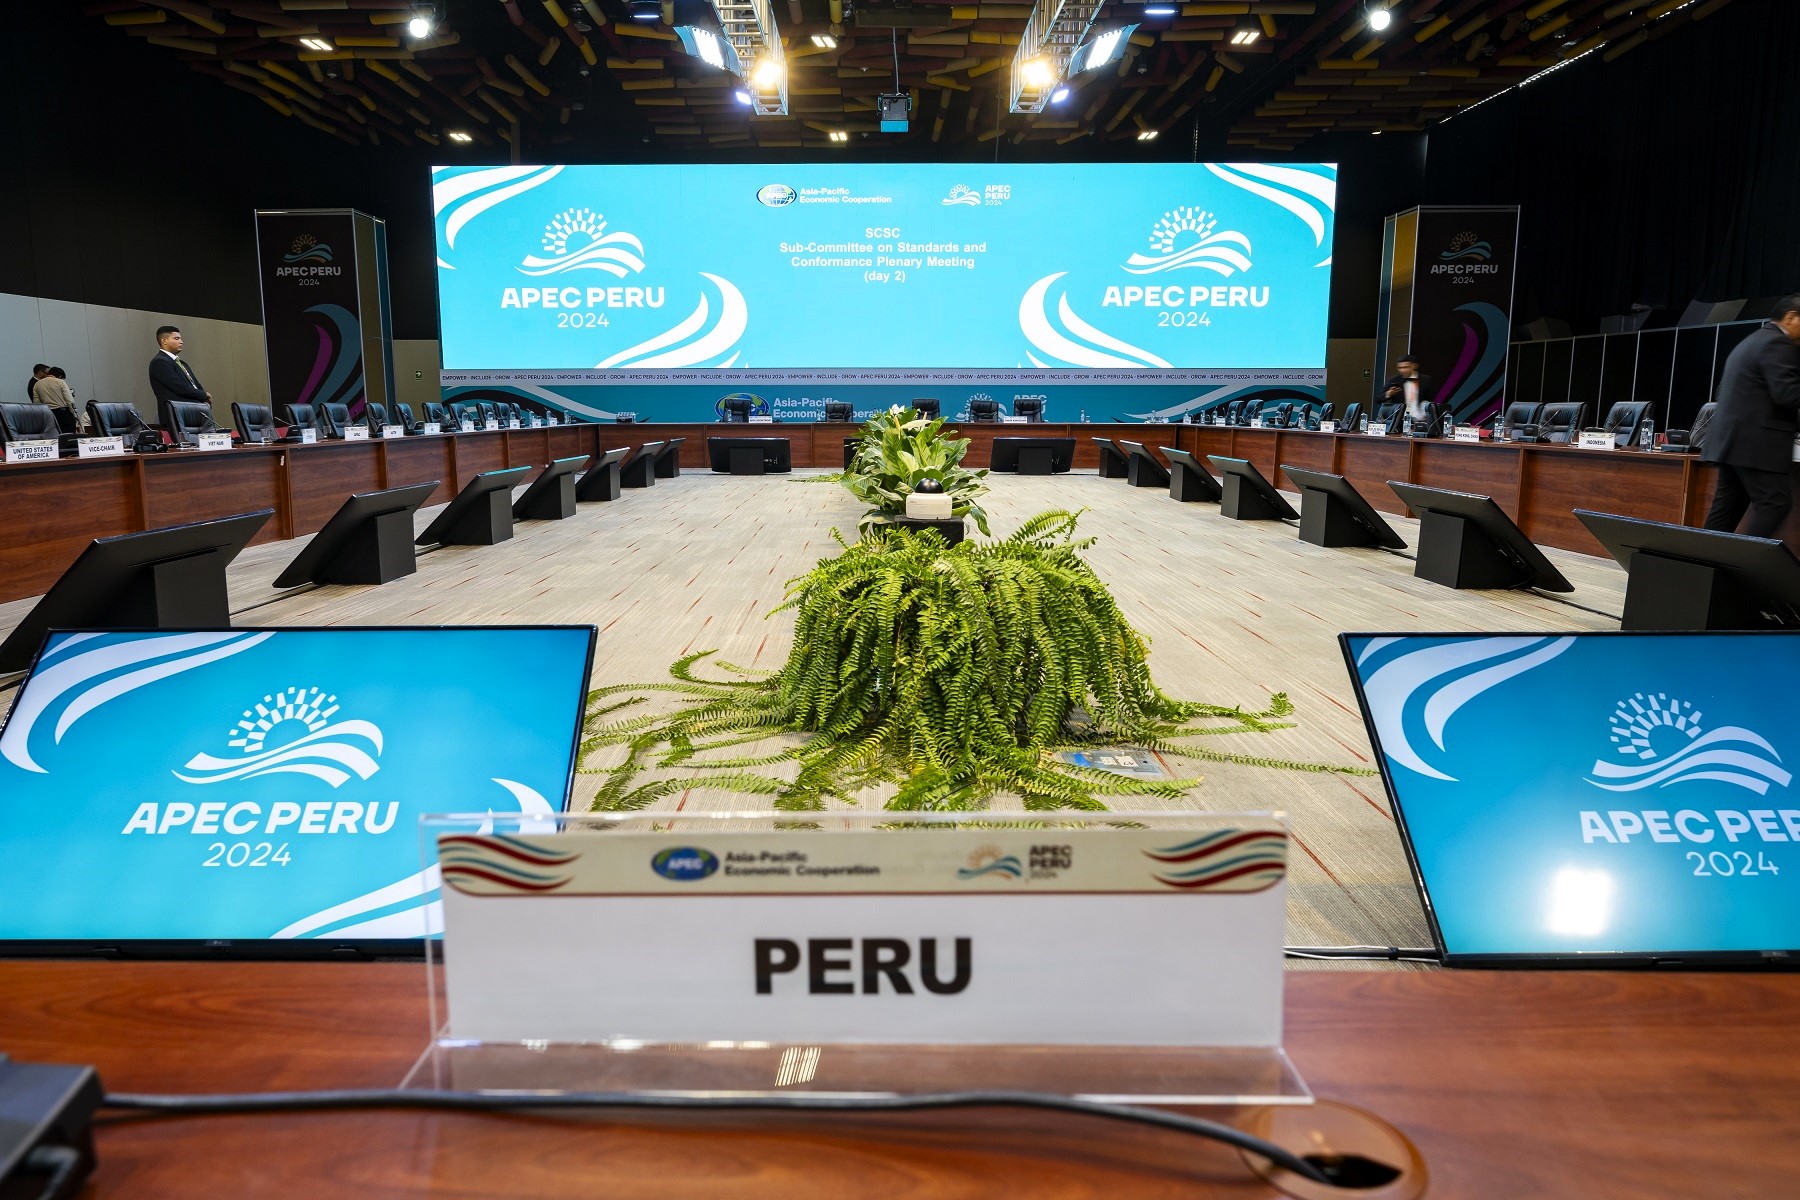 APEC impulsa la agenda de crecimiento de calidad, reuniones empezaron en Lima este 24 de febrero y concluirán el 8 de marzo.